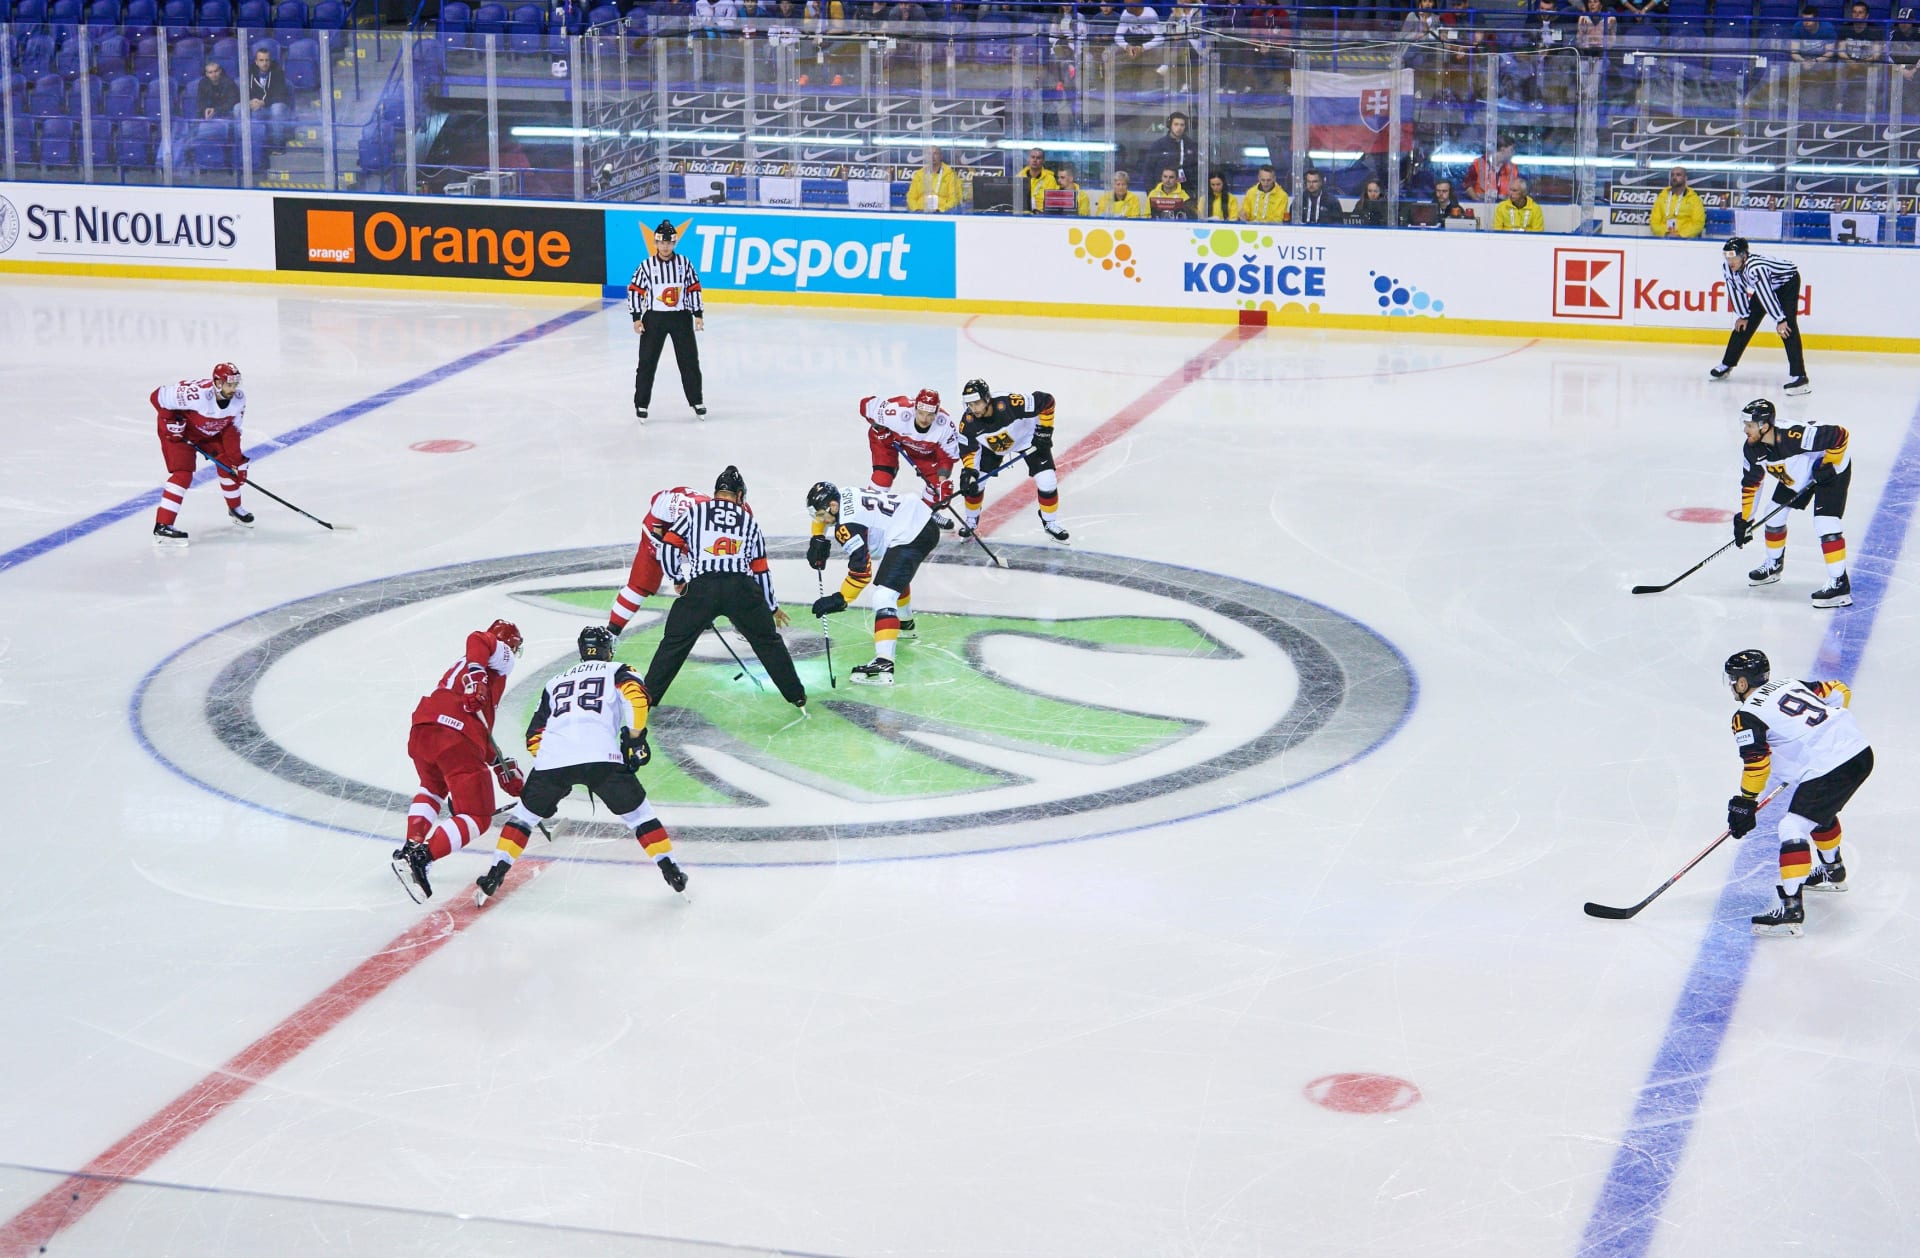 Mistrovství světa v ledním hokeji v roce 2021 uspořádá kompletně Lotyšsko.